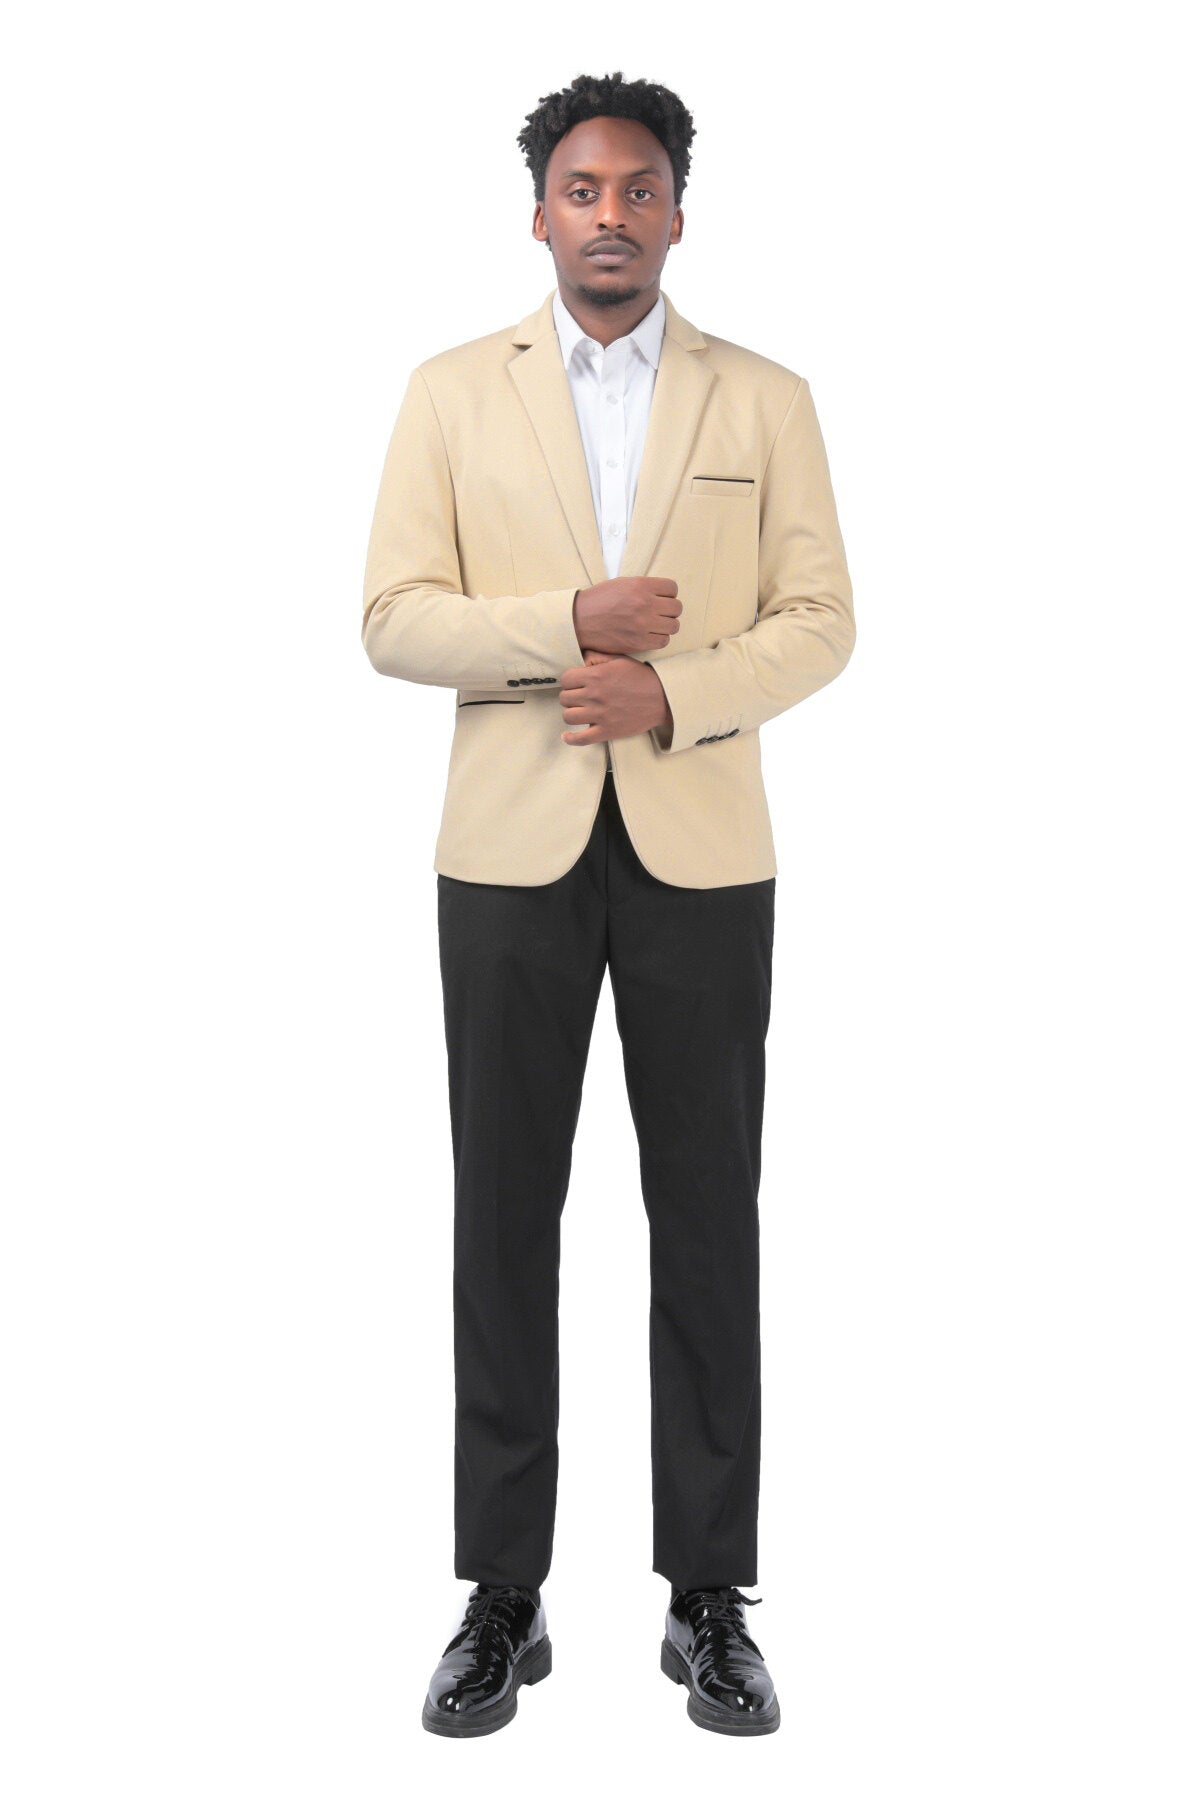 Men's Suit Jacket Slim Fit Coat Business Daily Blazer Khaki